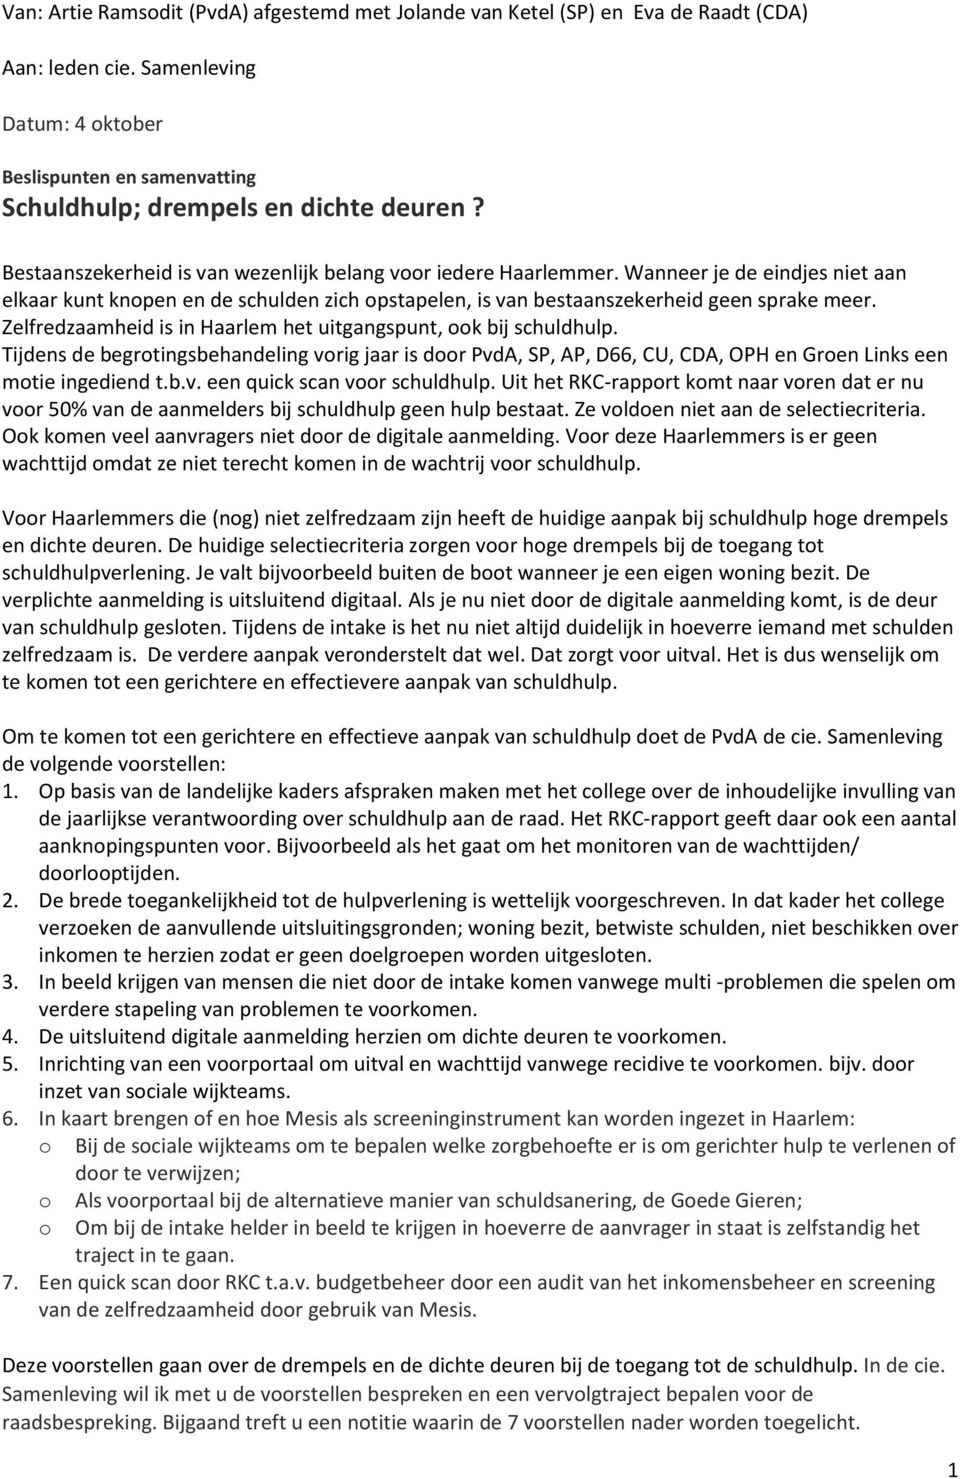 Zelfredzaamheid is in Haarlem het uitgangspunt, ook bij schuldhulp. Tijdens de begrotingsbehandeling vorig jaar is door PvdA, SP, AP, D66, CU, CDA, OPH en Groen Links een motie ingediend t.b.v. een quick scan voor schuldhulp.